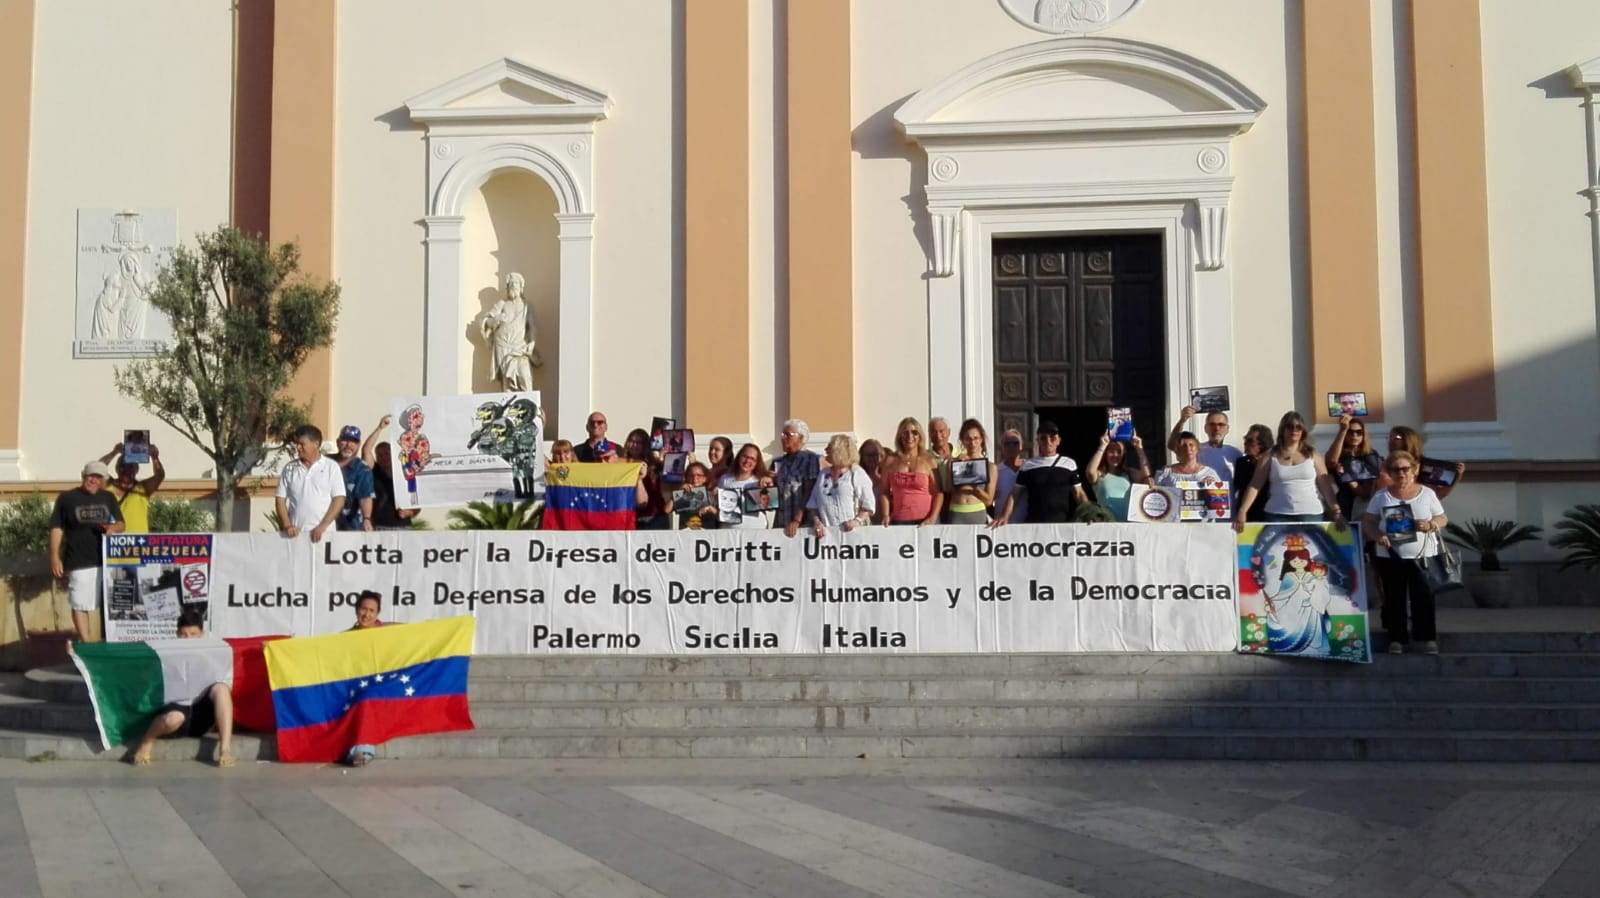 Quieren votar en primarias venezolanas, comienza movilización